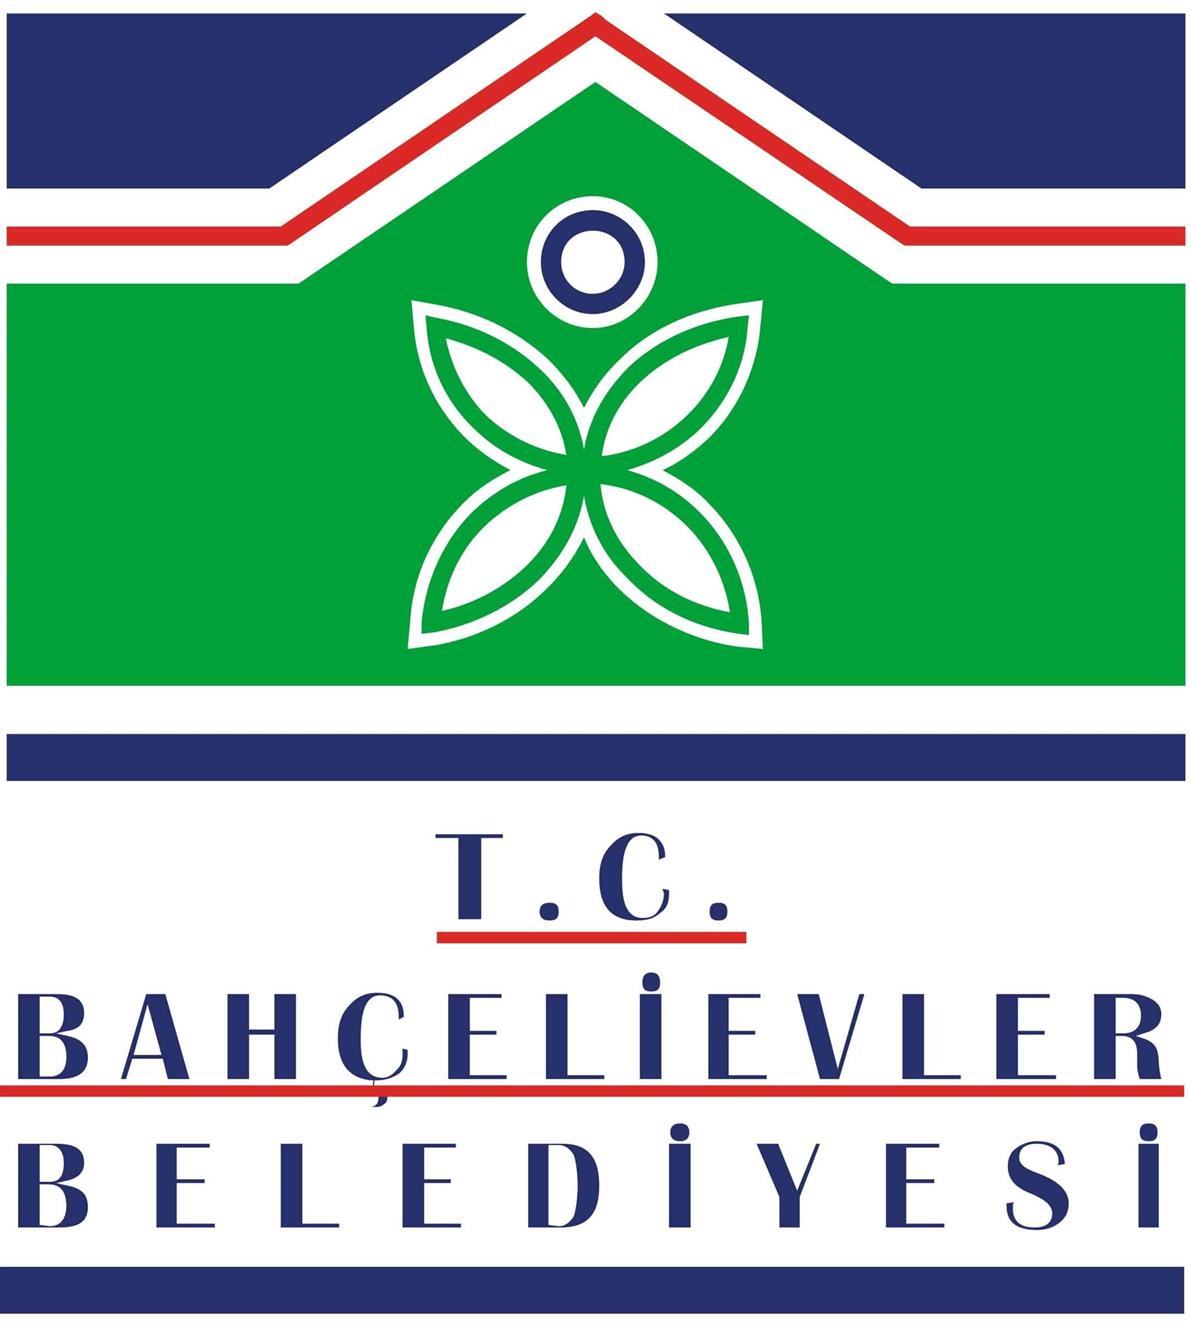 bahcelievler belediyesi logo